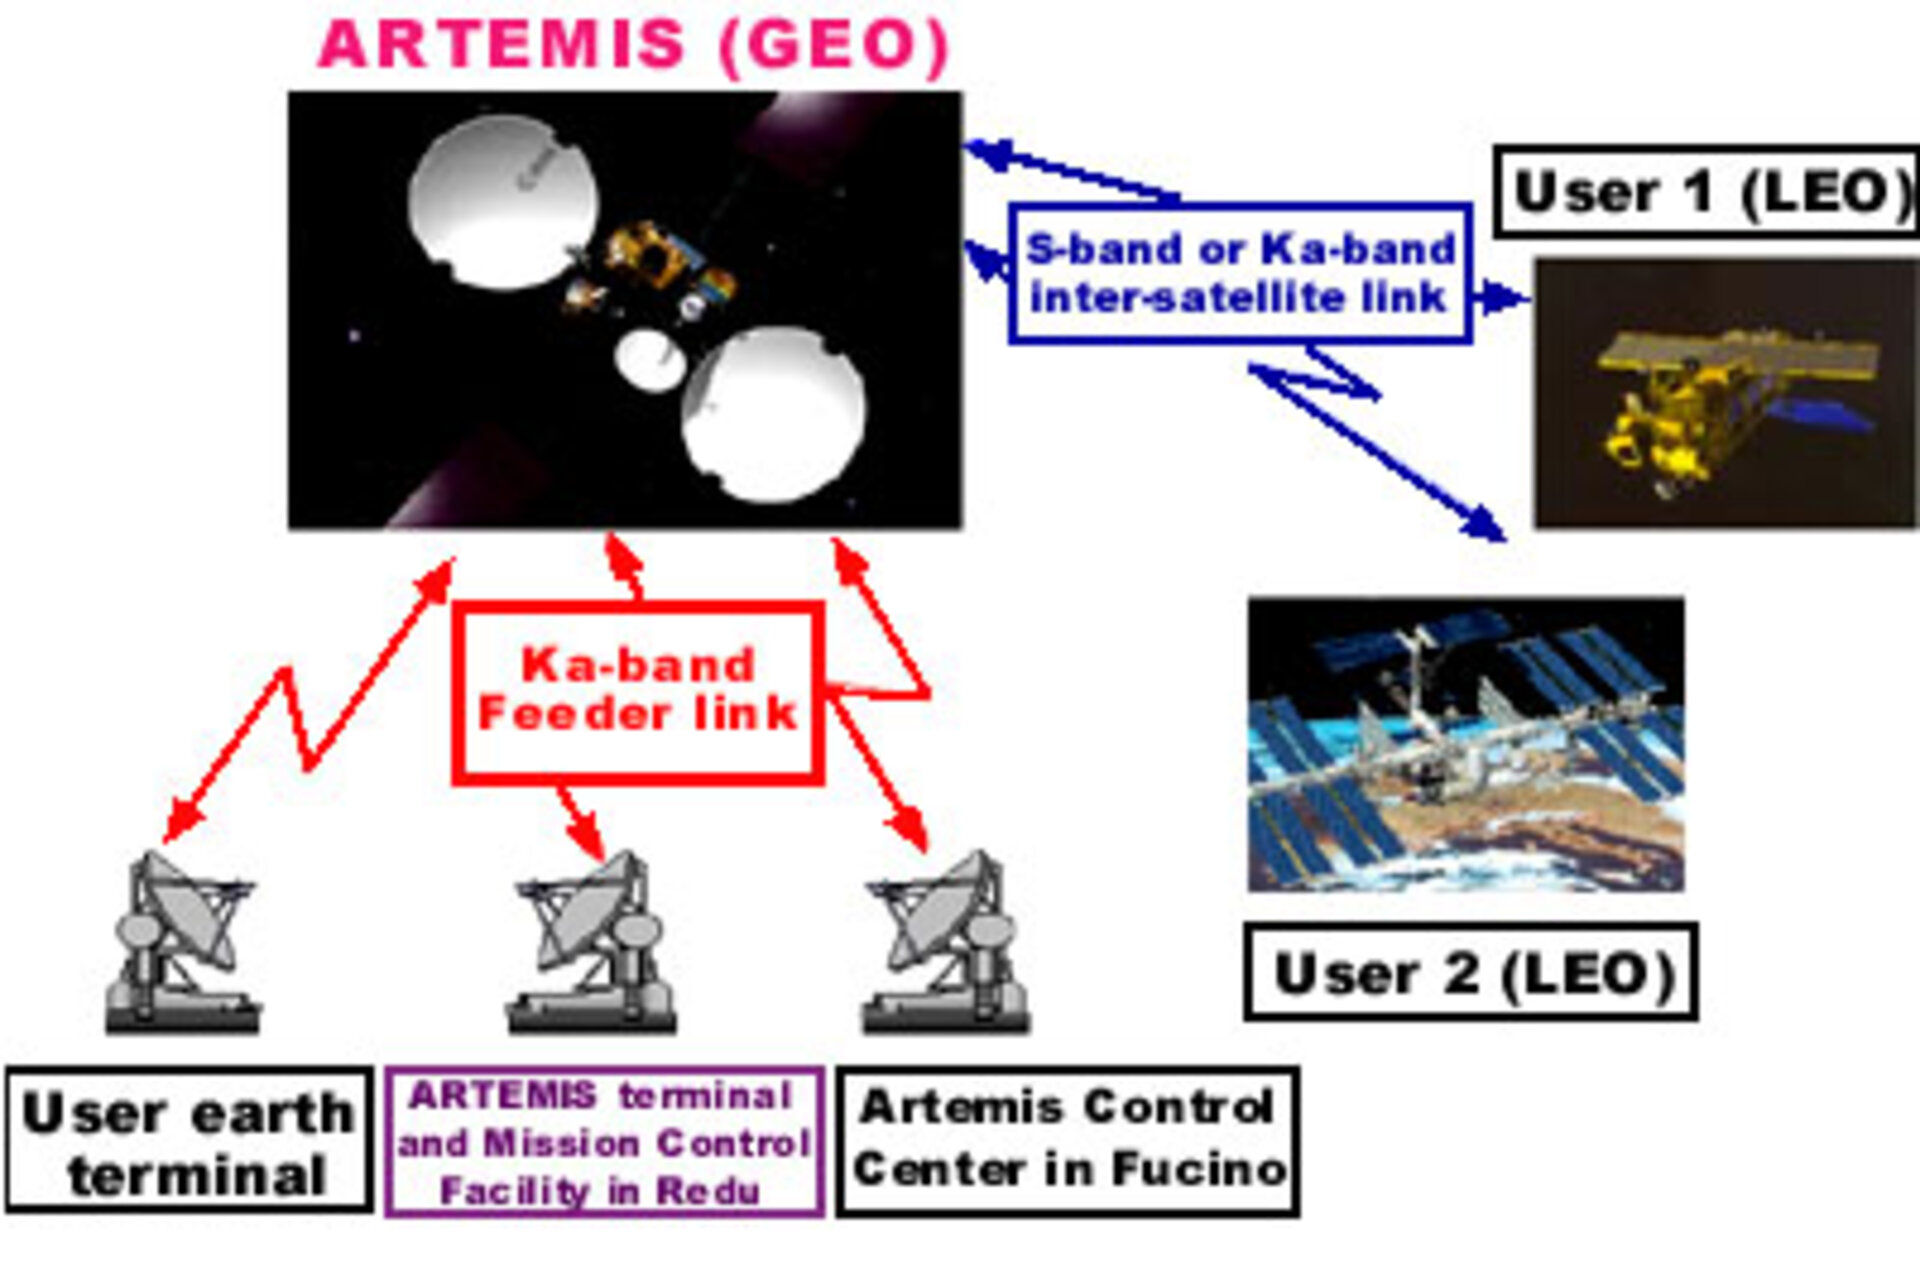 Artemis ground segment